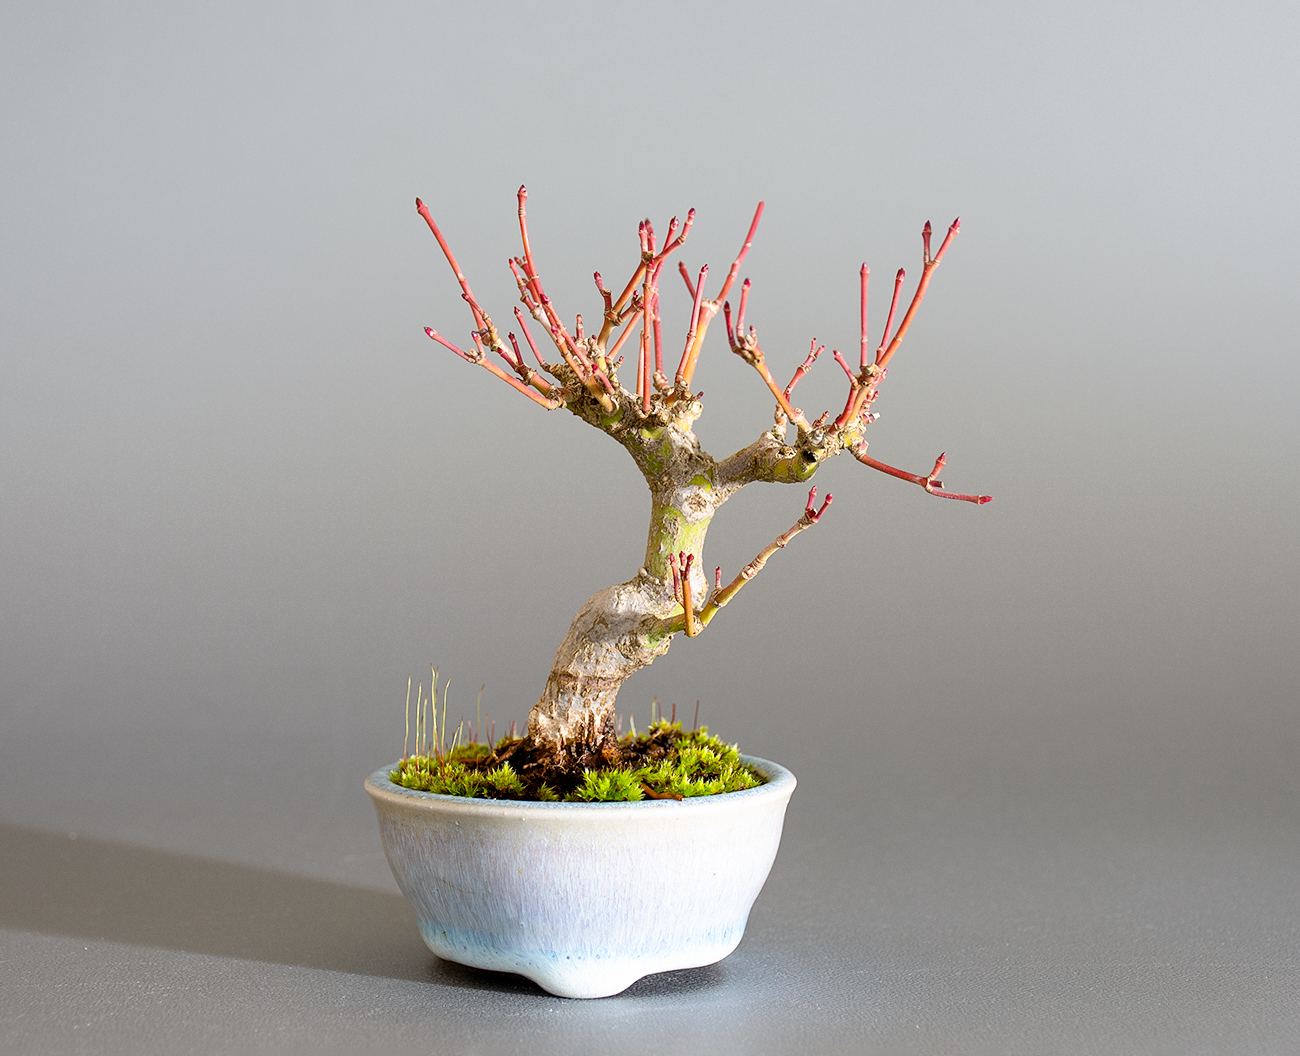 イロハモミジ-P1（いろはもみじ・いろは紅葉）雑木盆栽の販売と育て方・作り方・Acer palmatum bonsai